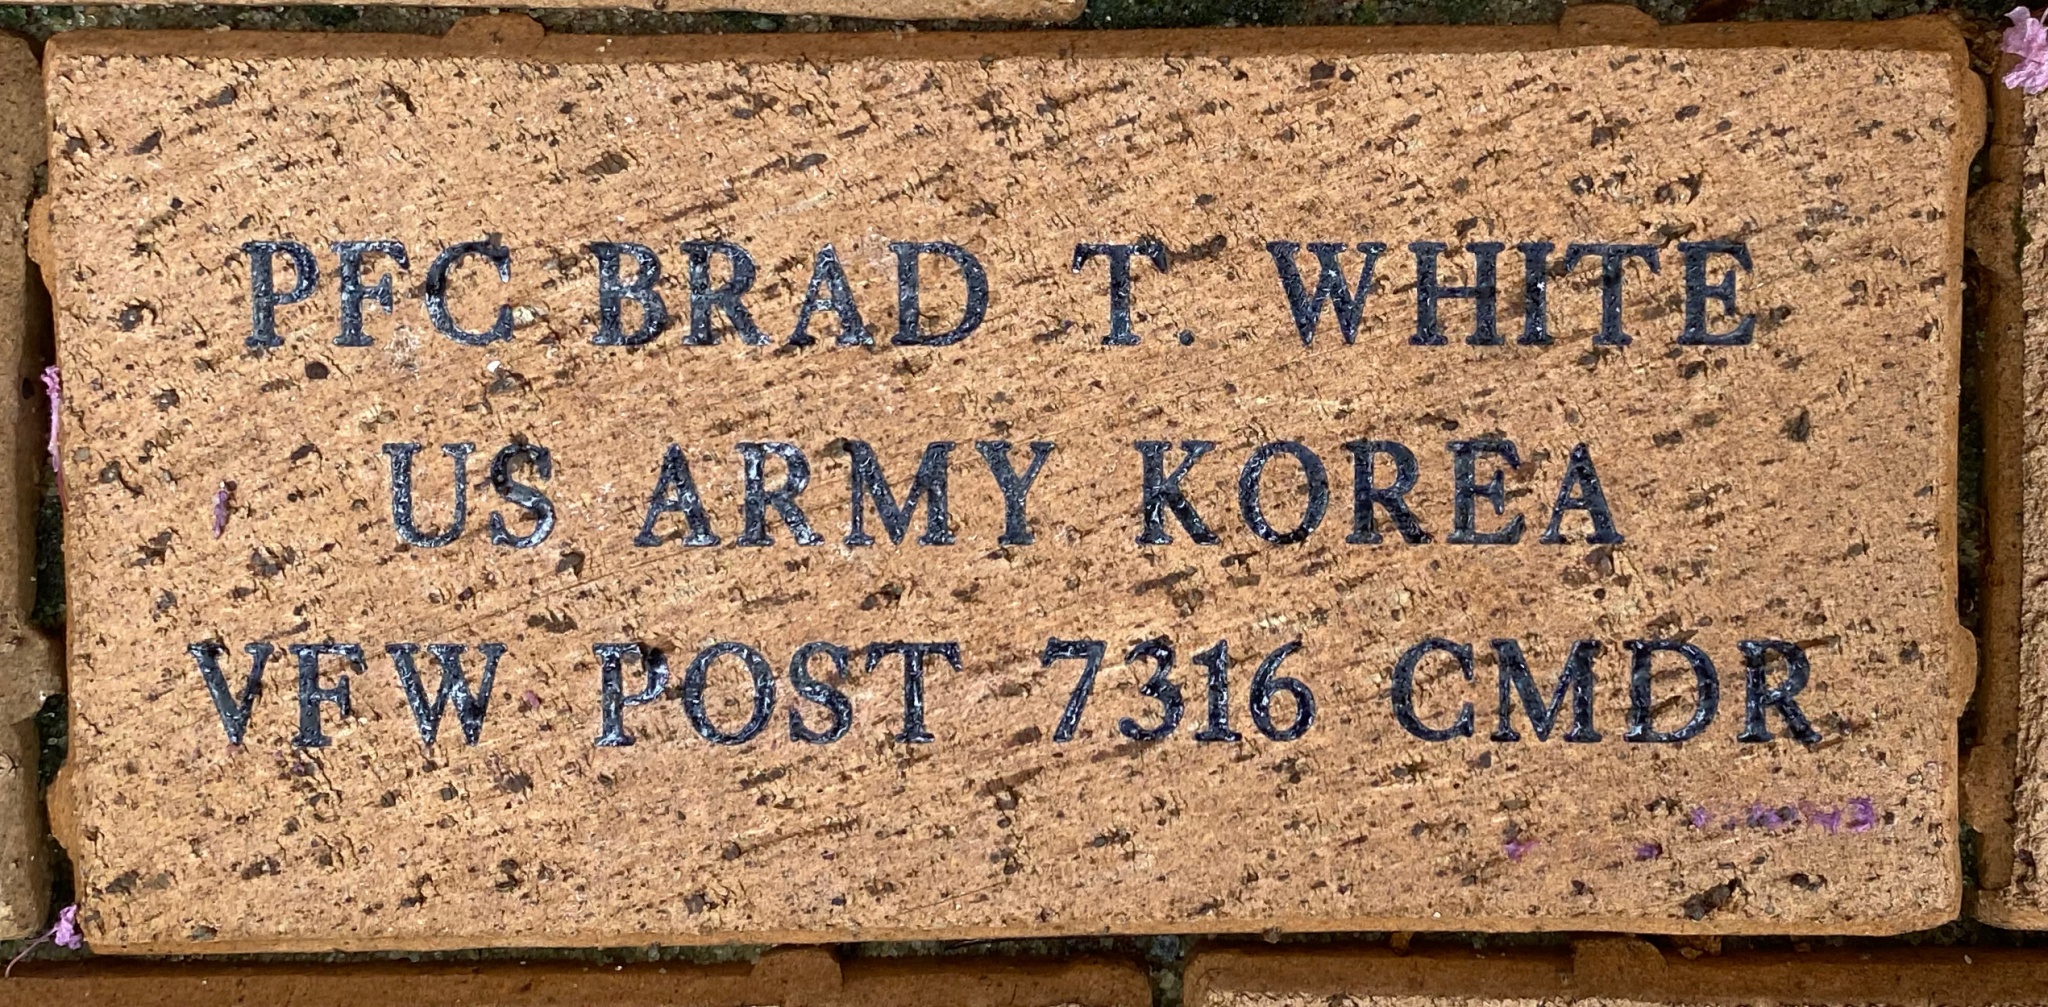 PFC BRAD T. WHITE US ARMY KOREA VFW POST 7316 CMDR